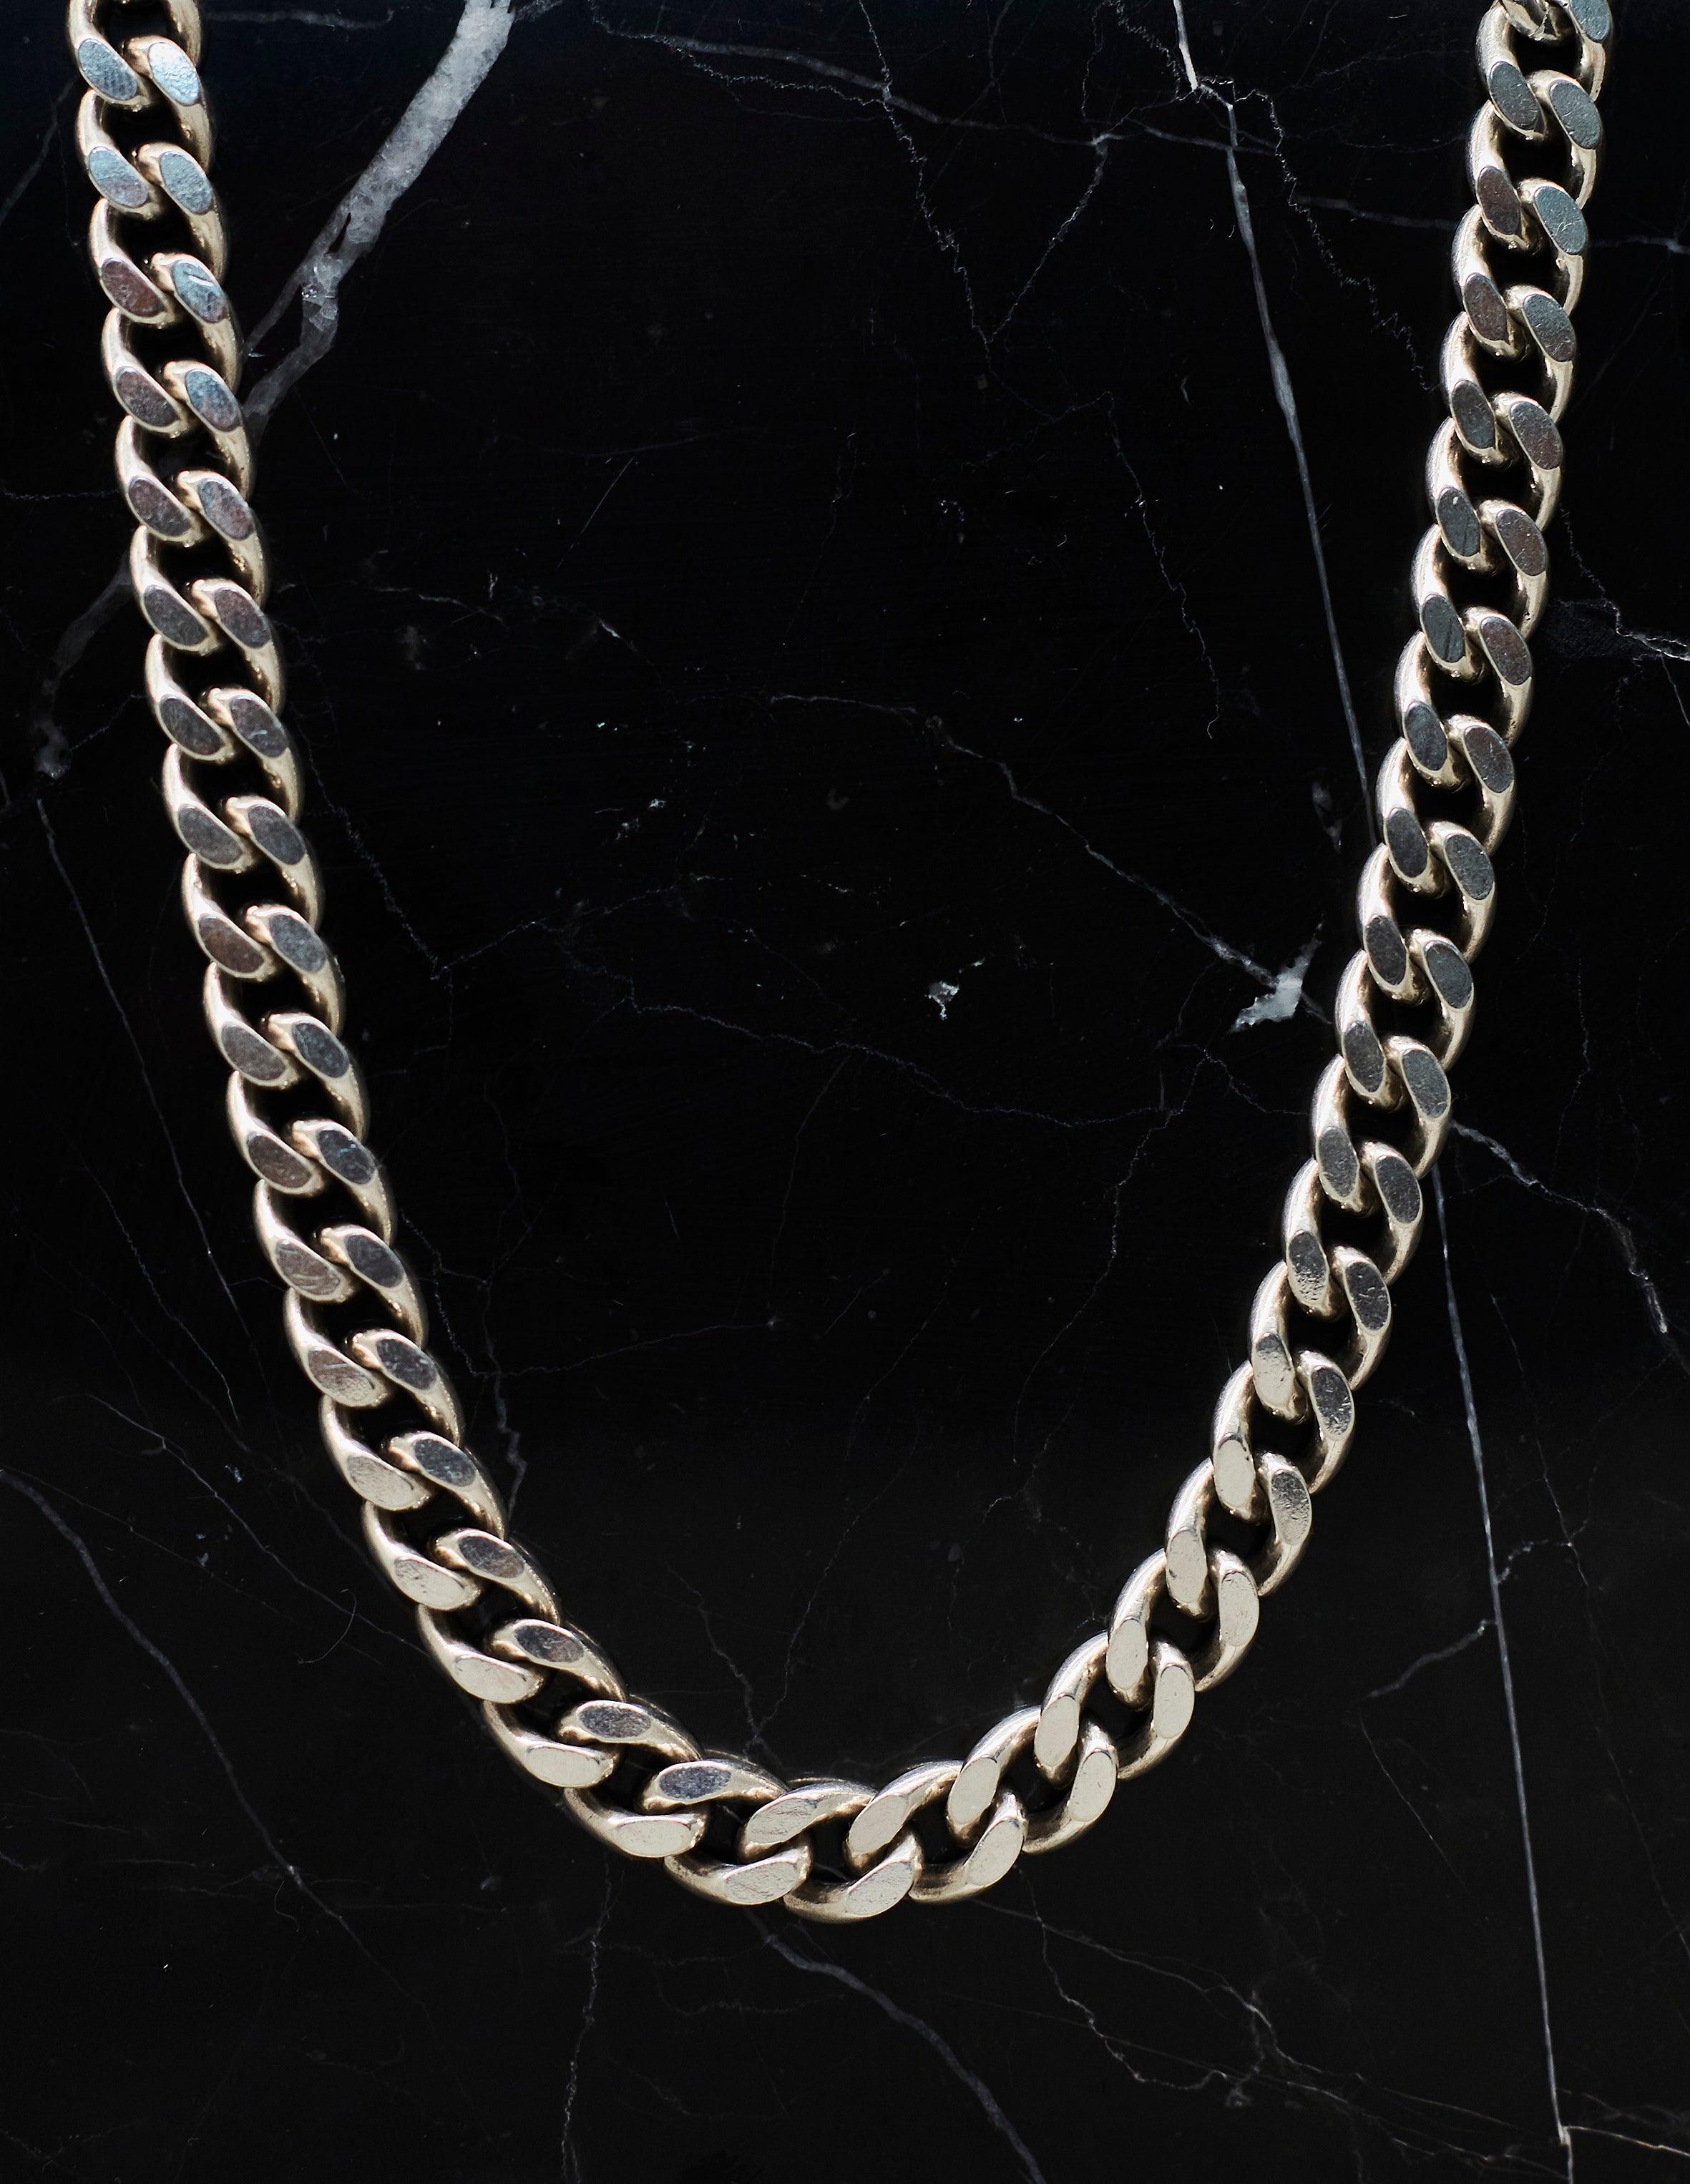 Hephaestus necklace